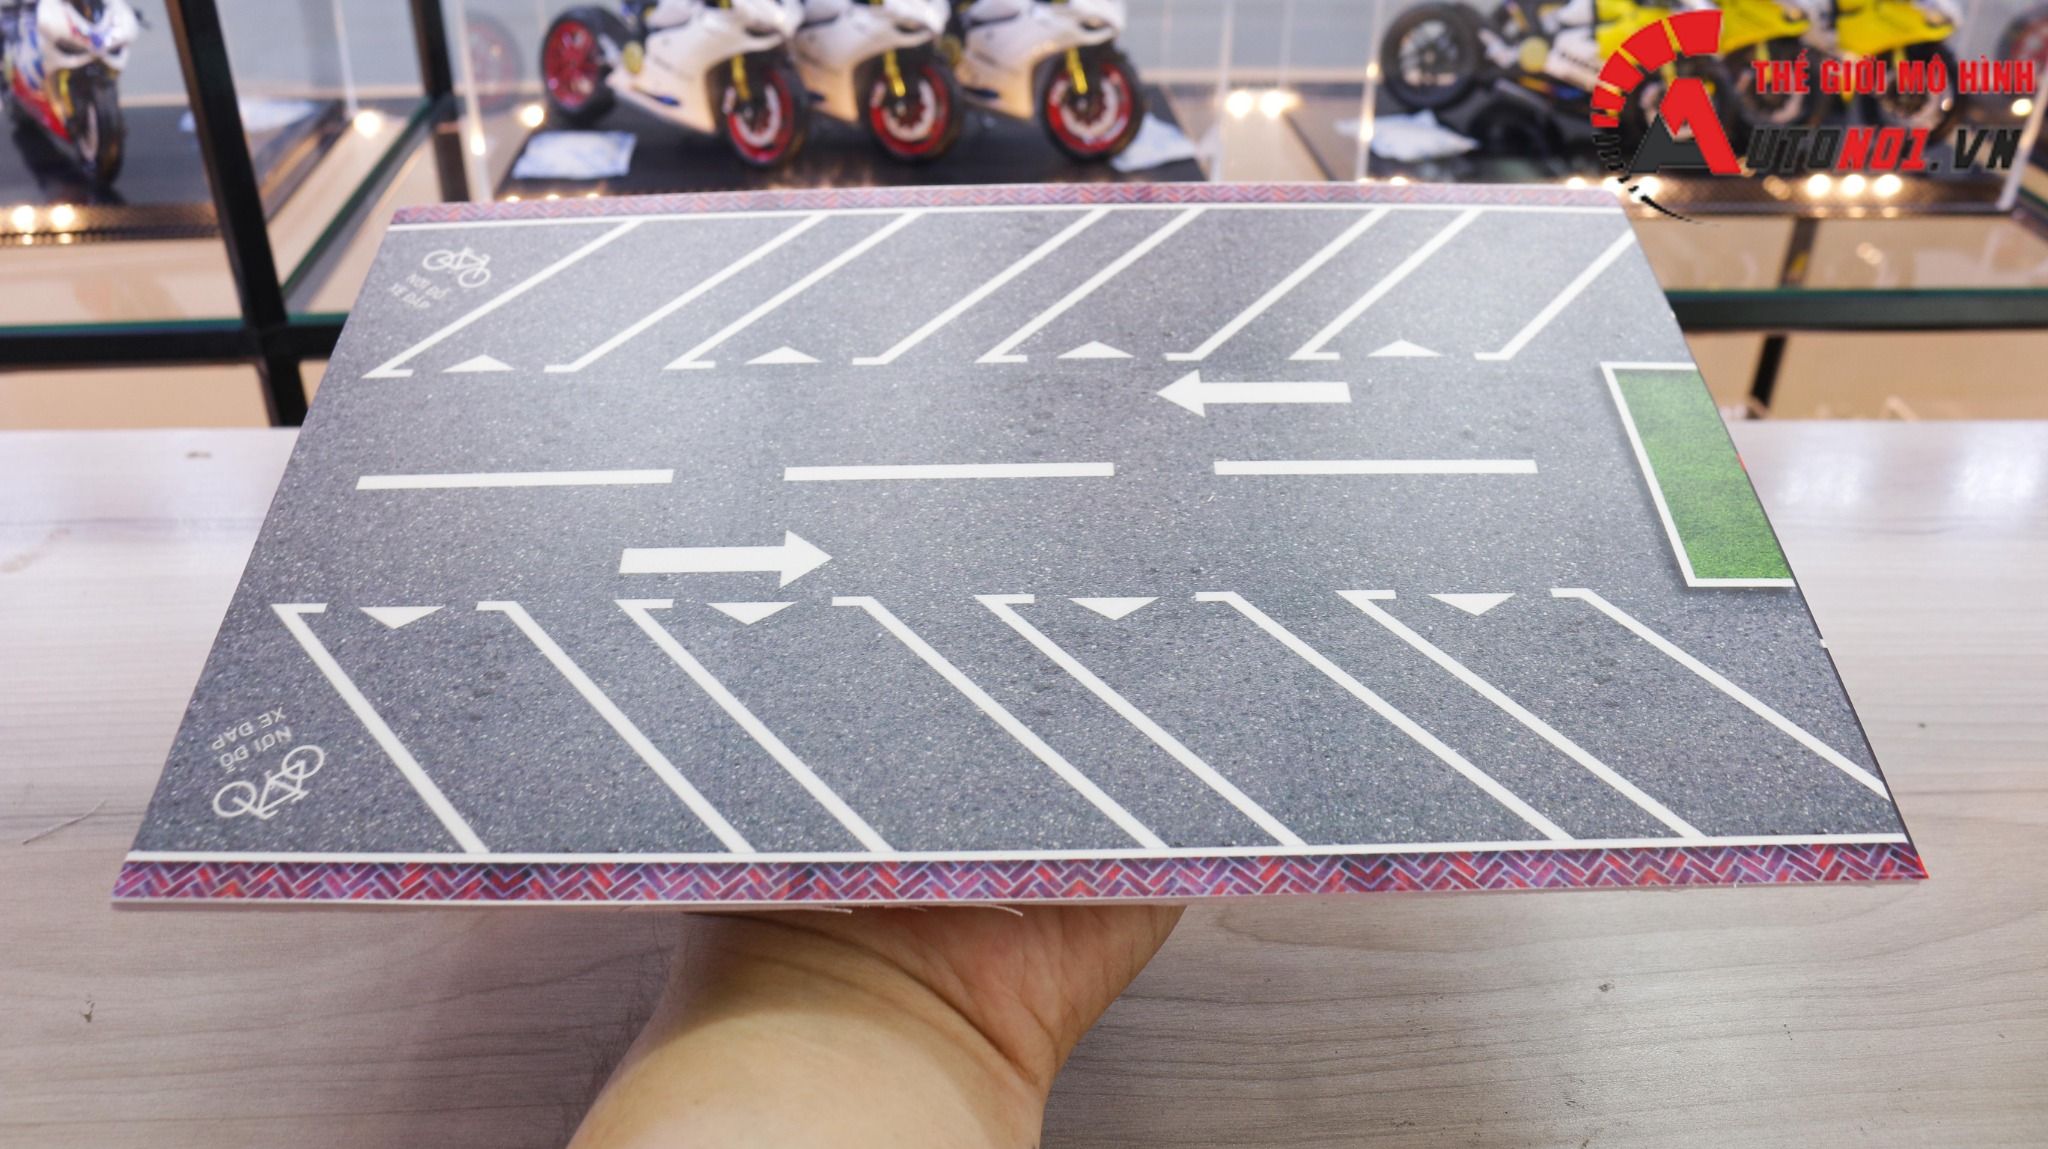  Diorama mặt đường - parking kích thước 20x30 cm cho ô tô tỉ lệ 1:64 Autono1 DR011A 